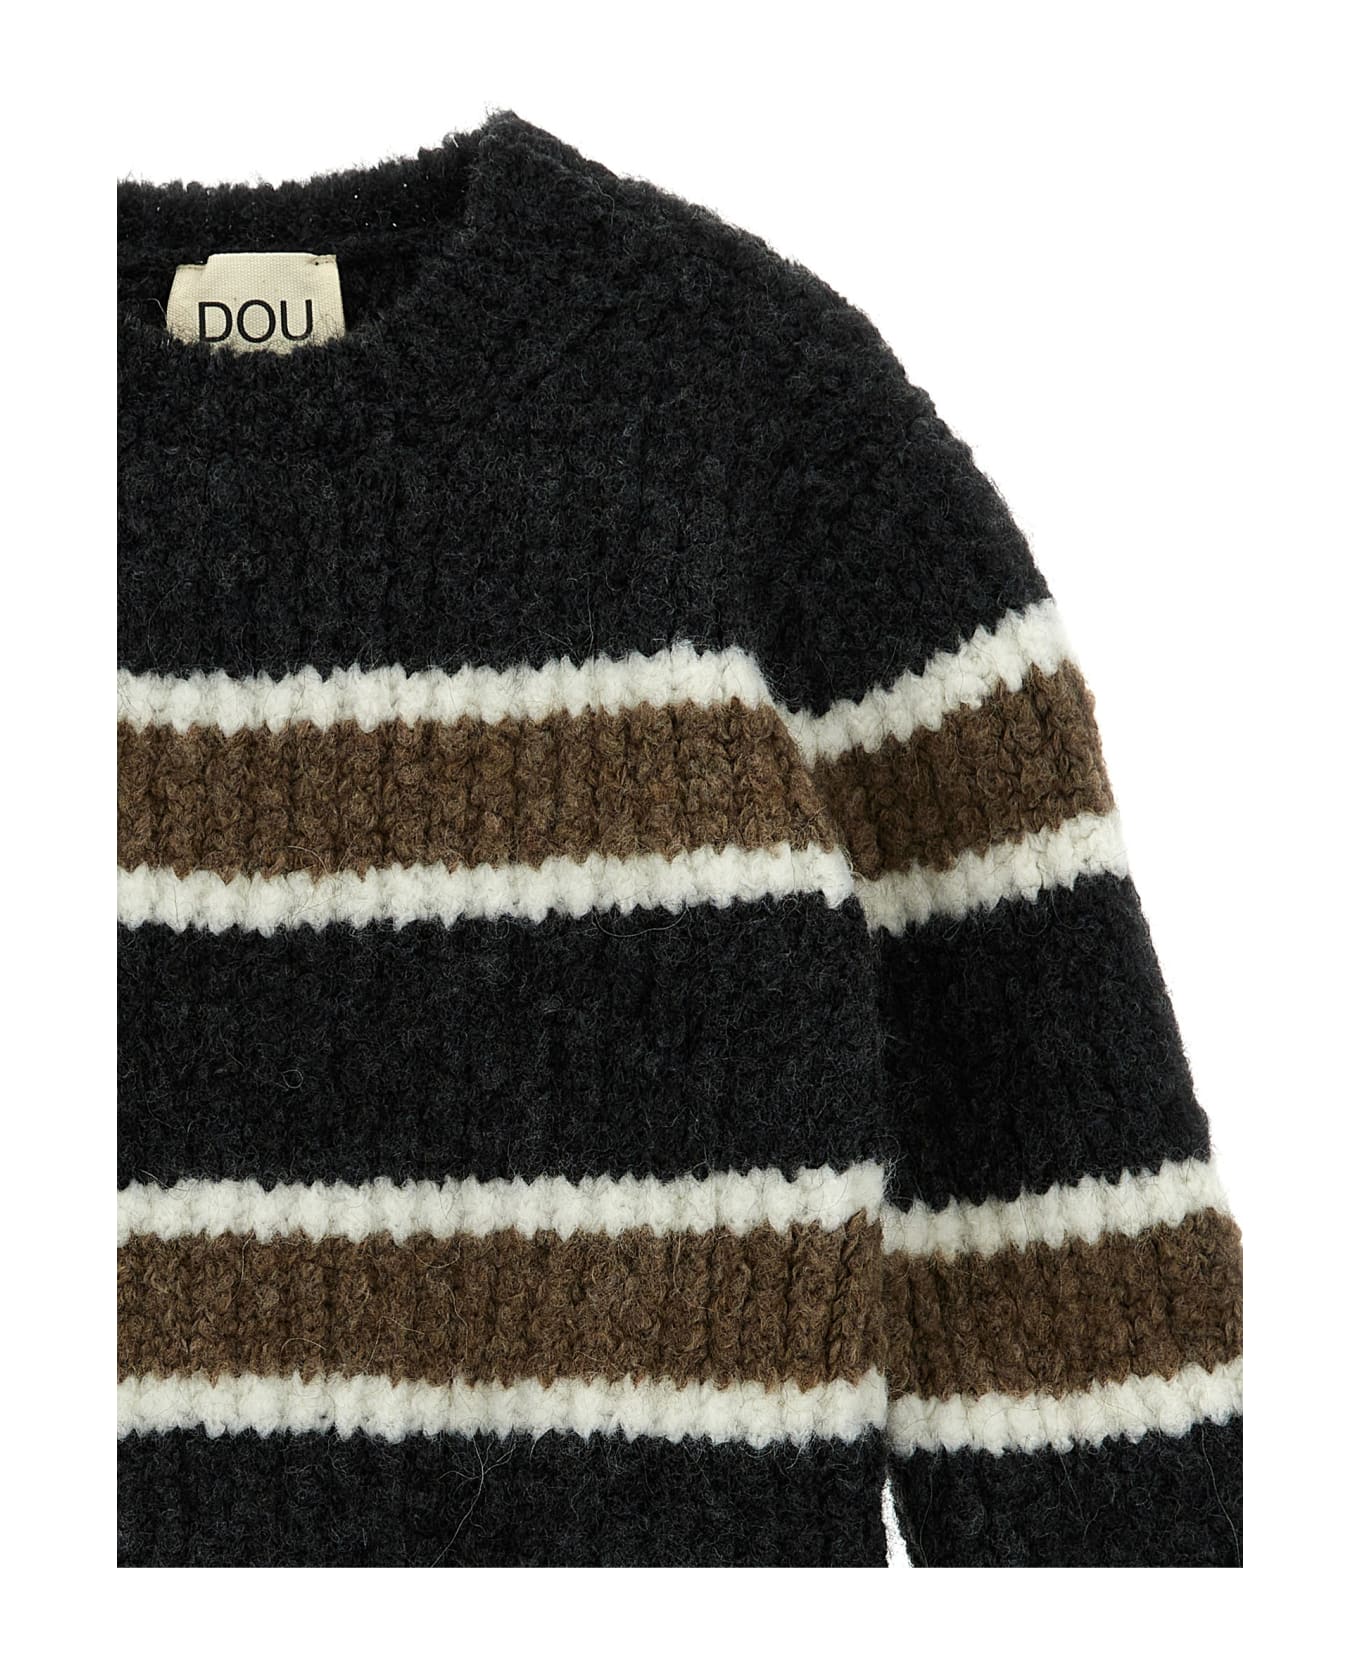 Douuod Striped Sweater - Multicolor